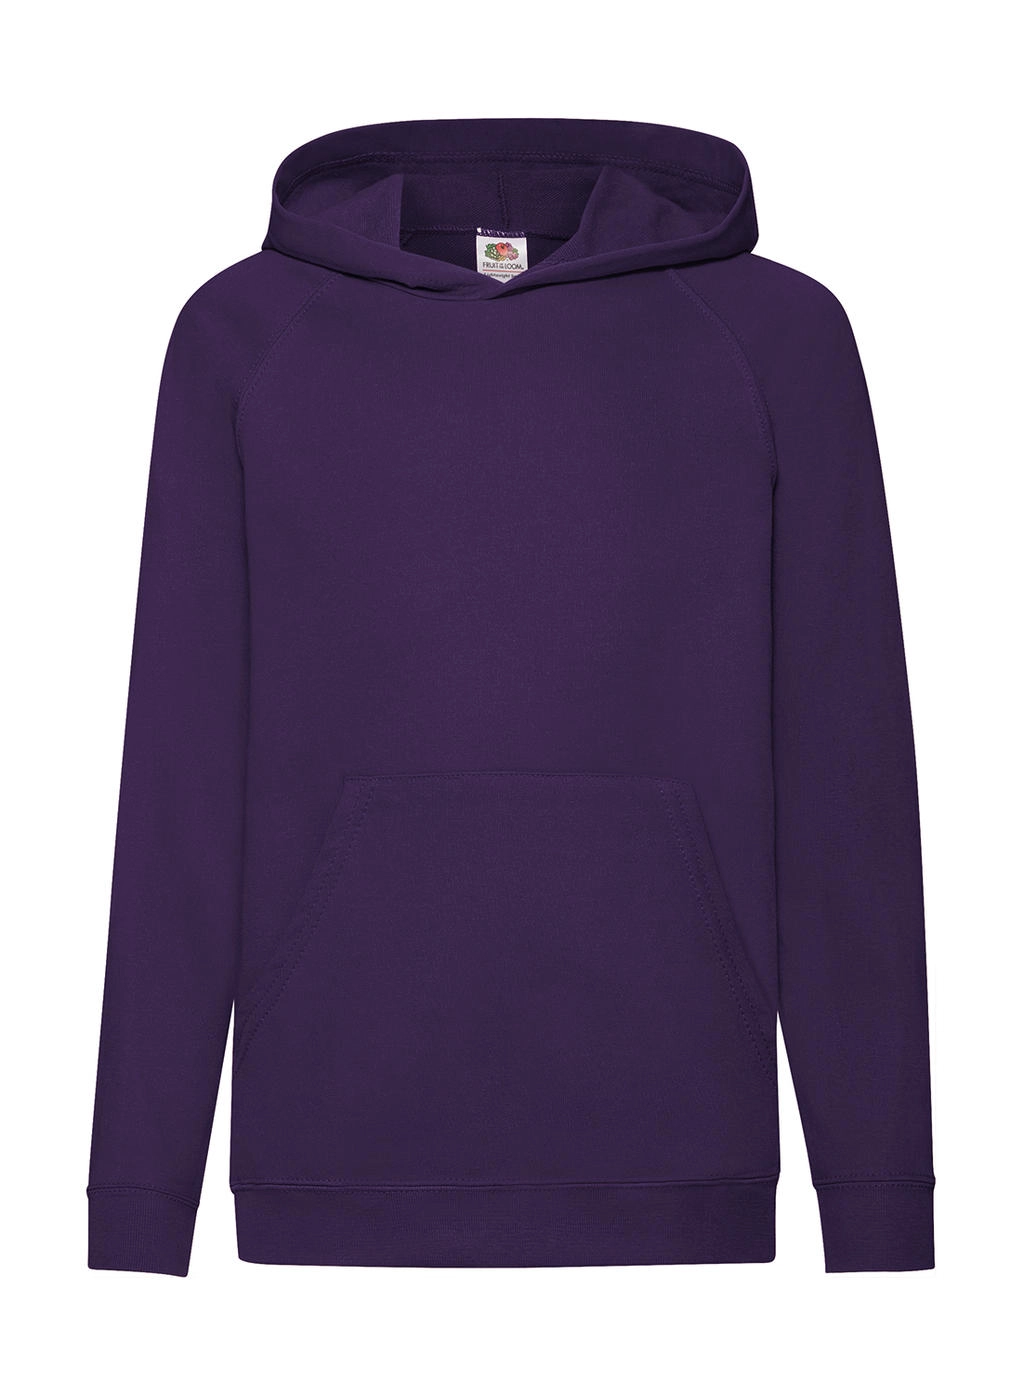 Kids` Lightweight Hooded Sweat zum Besticken und Bedrucken in der Farbe Purple mit Ihren Logo, Schriftzug oder Motiv.